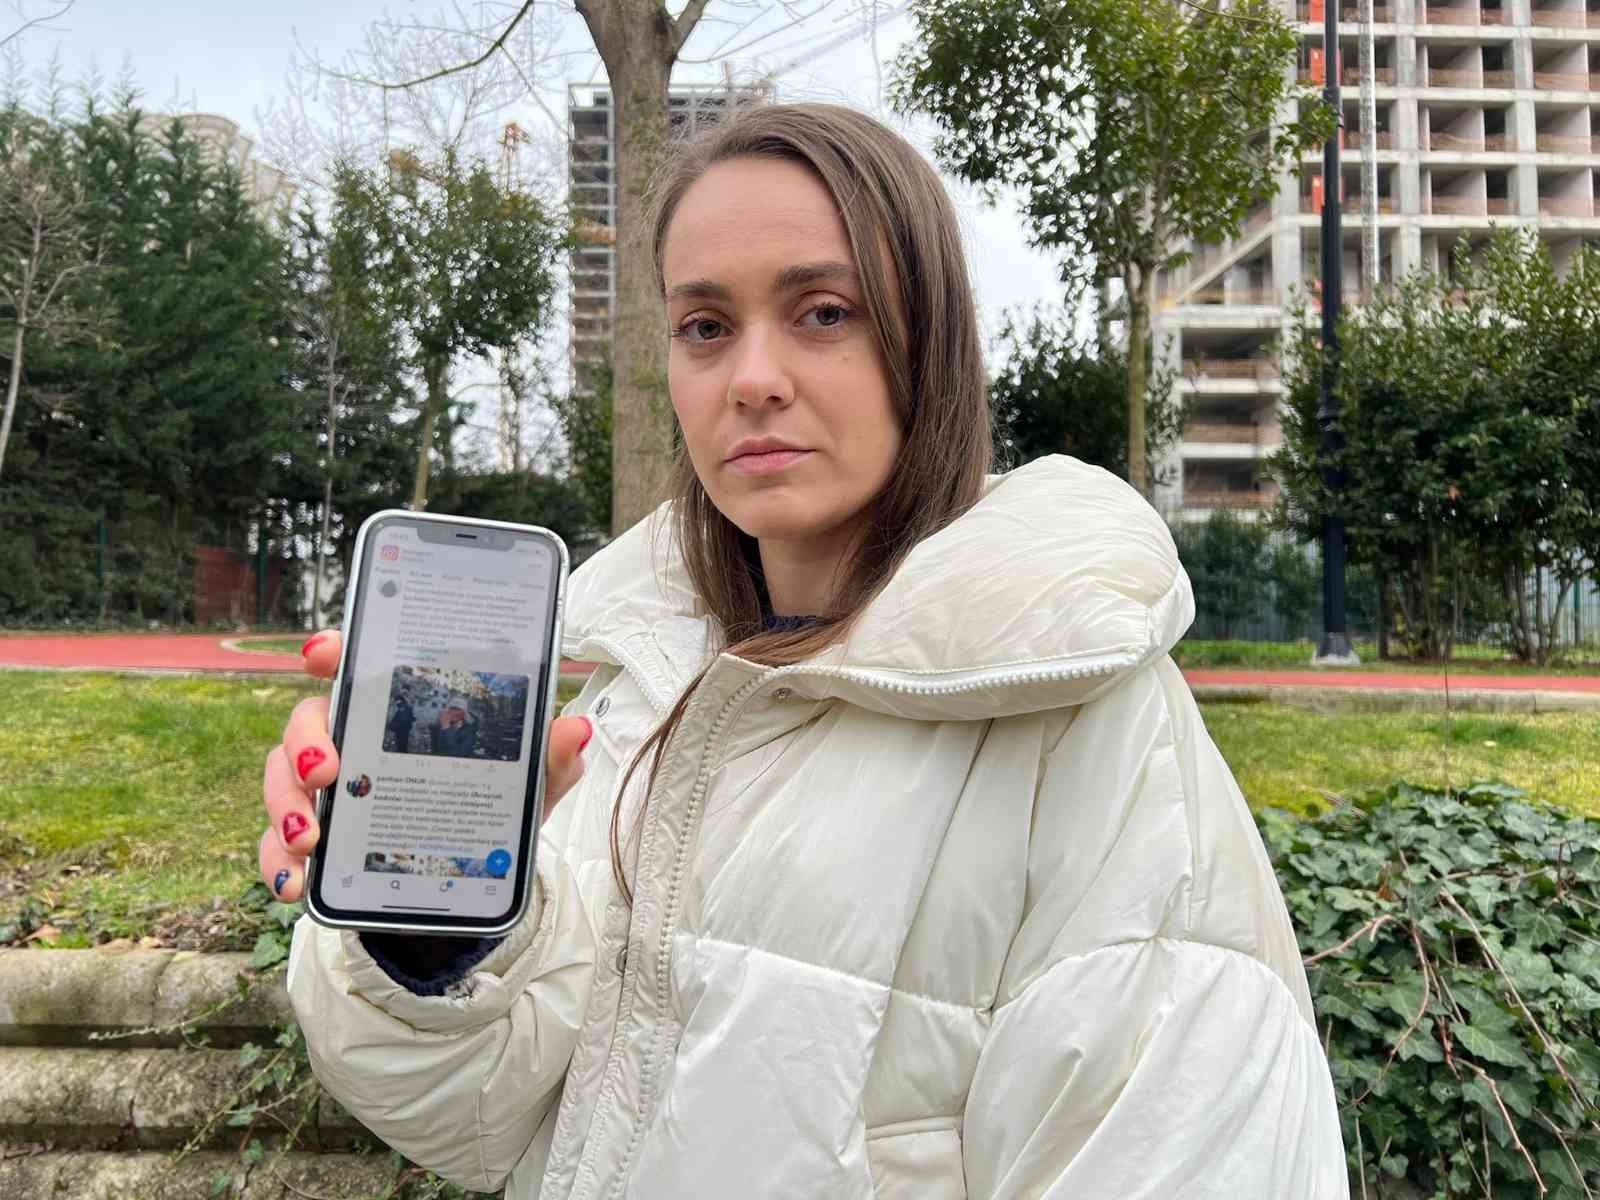 Ukraynalı Anastasiya, sosyal medyada Ukraynalı kadınlar için yapılan paylaşımlara isyan etti